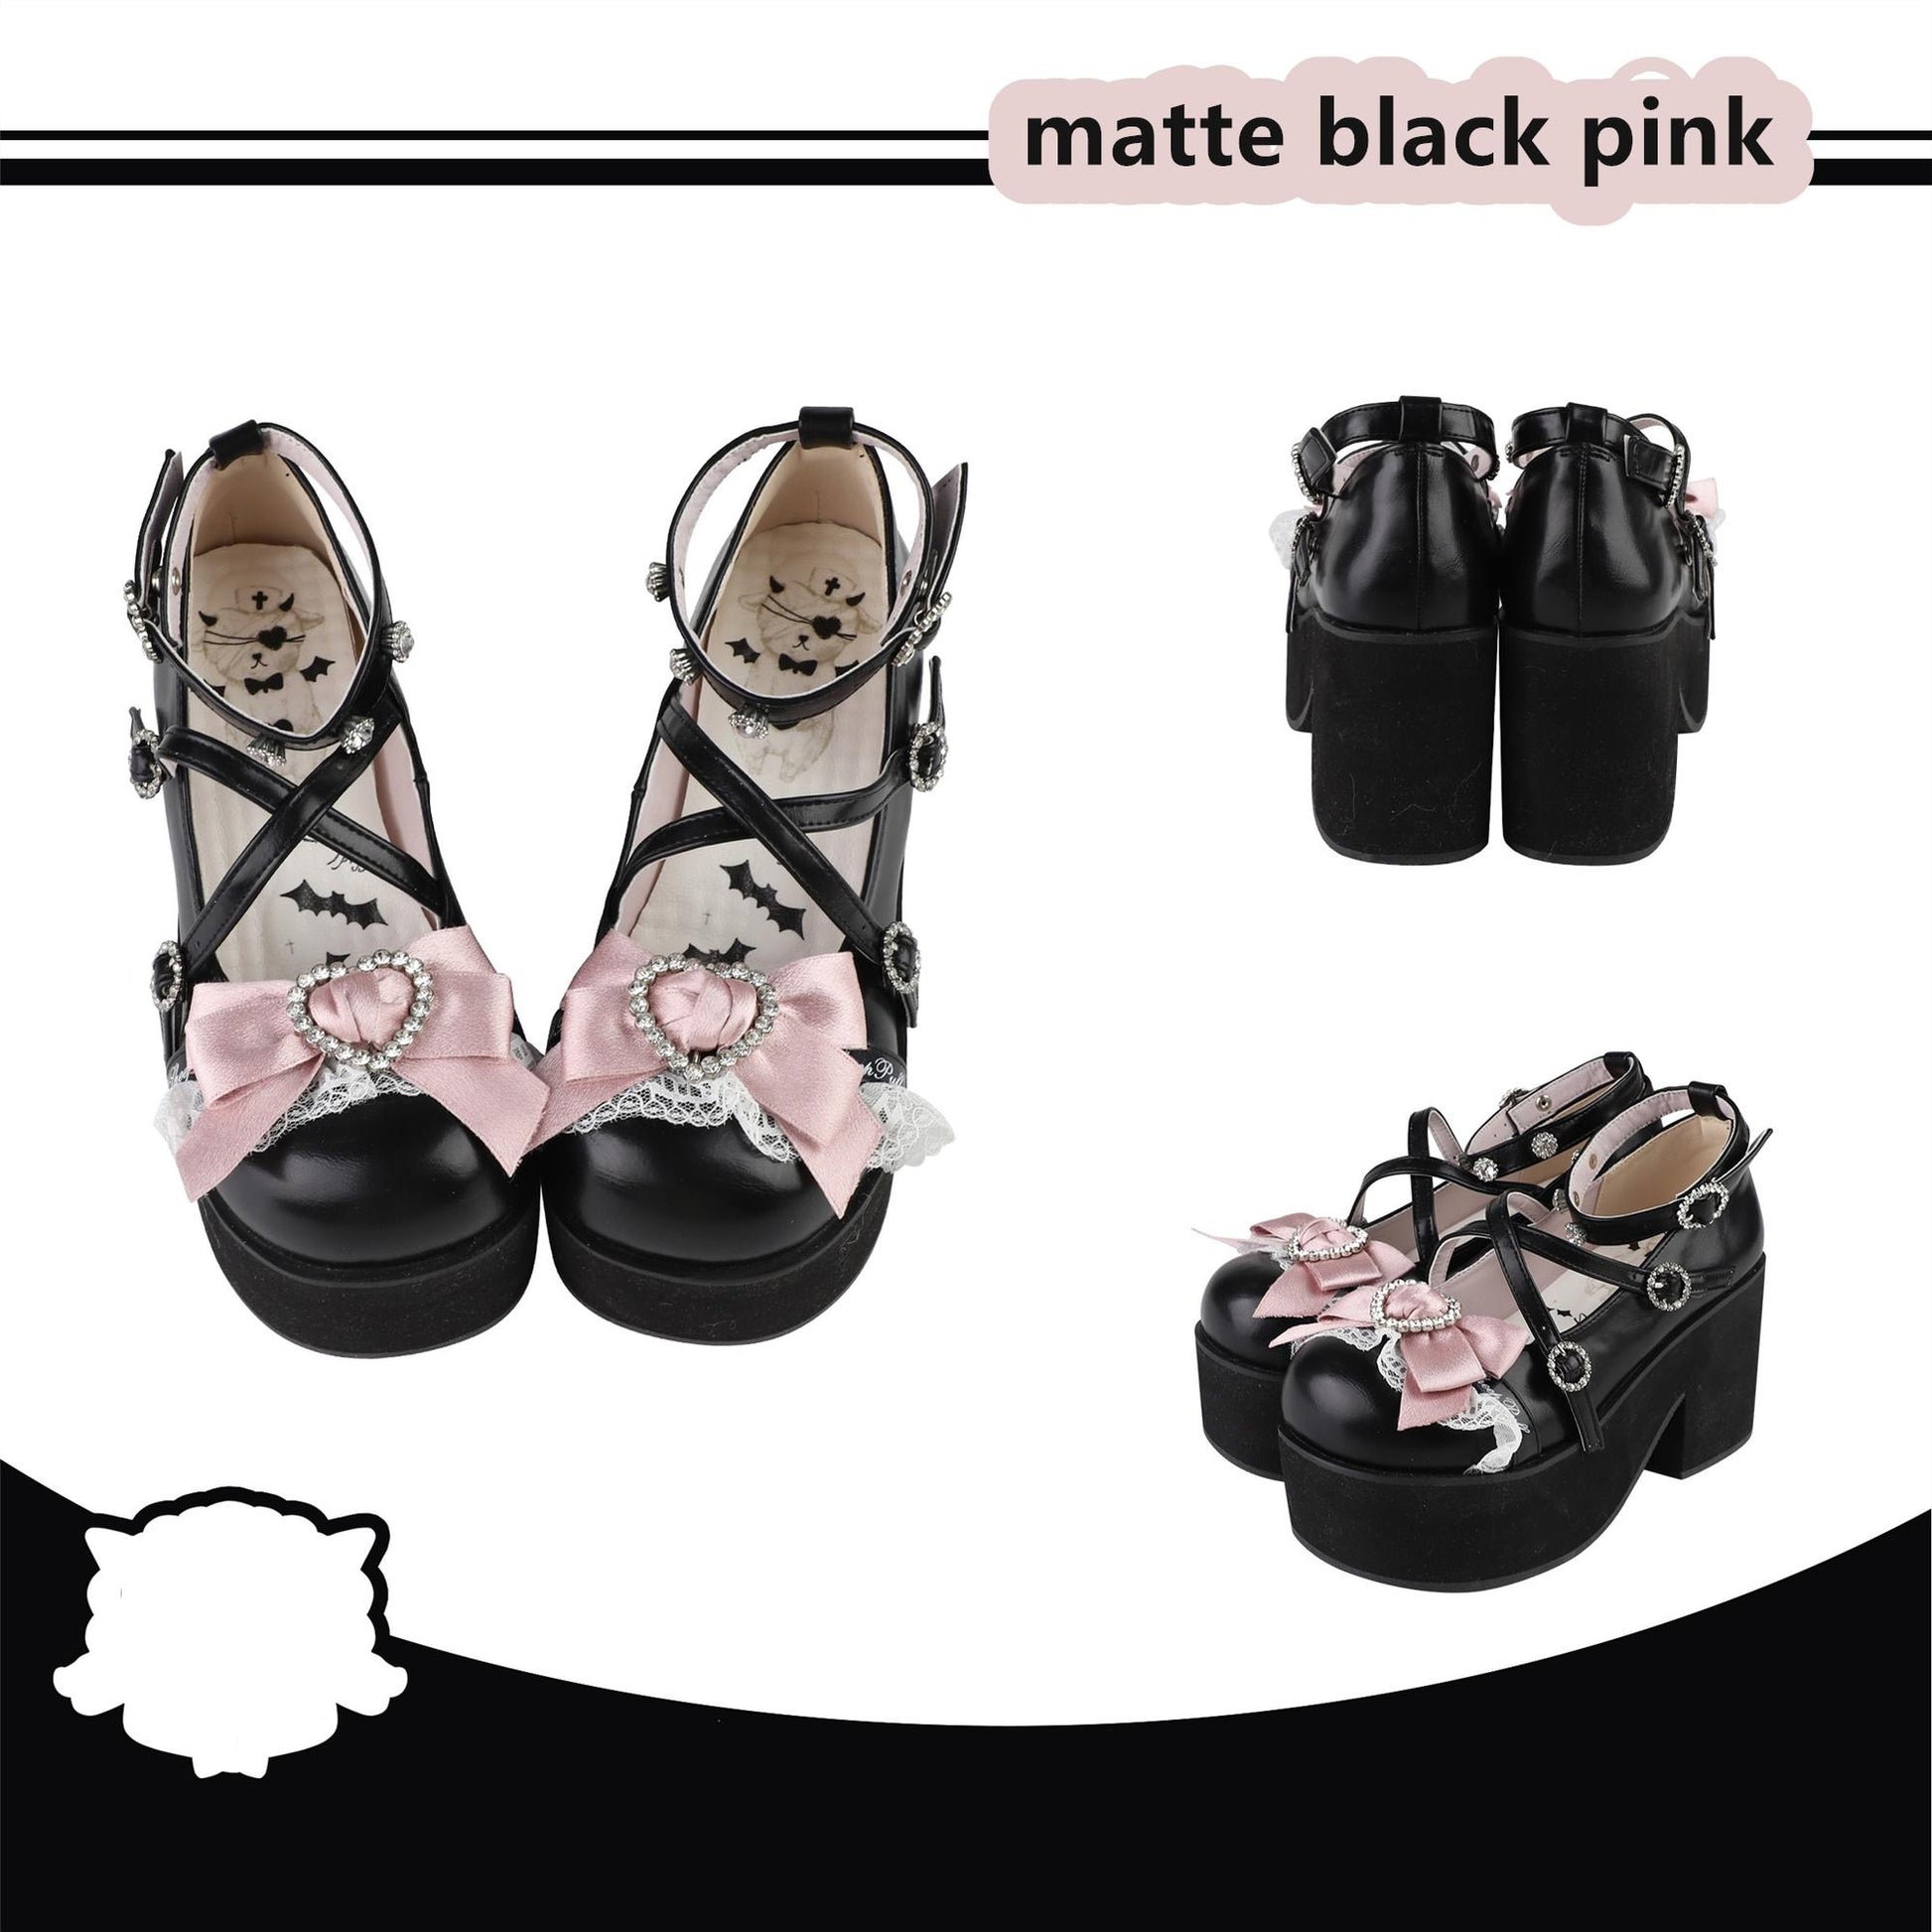 Lolita Platform Shoes Rhinestone Buckles Black Shoes (35 36 37 38 39 40) 37634:574784